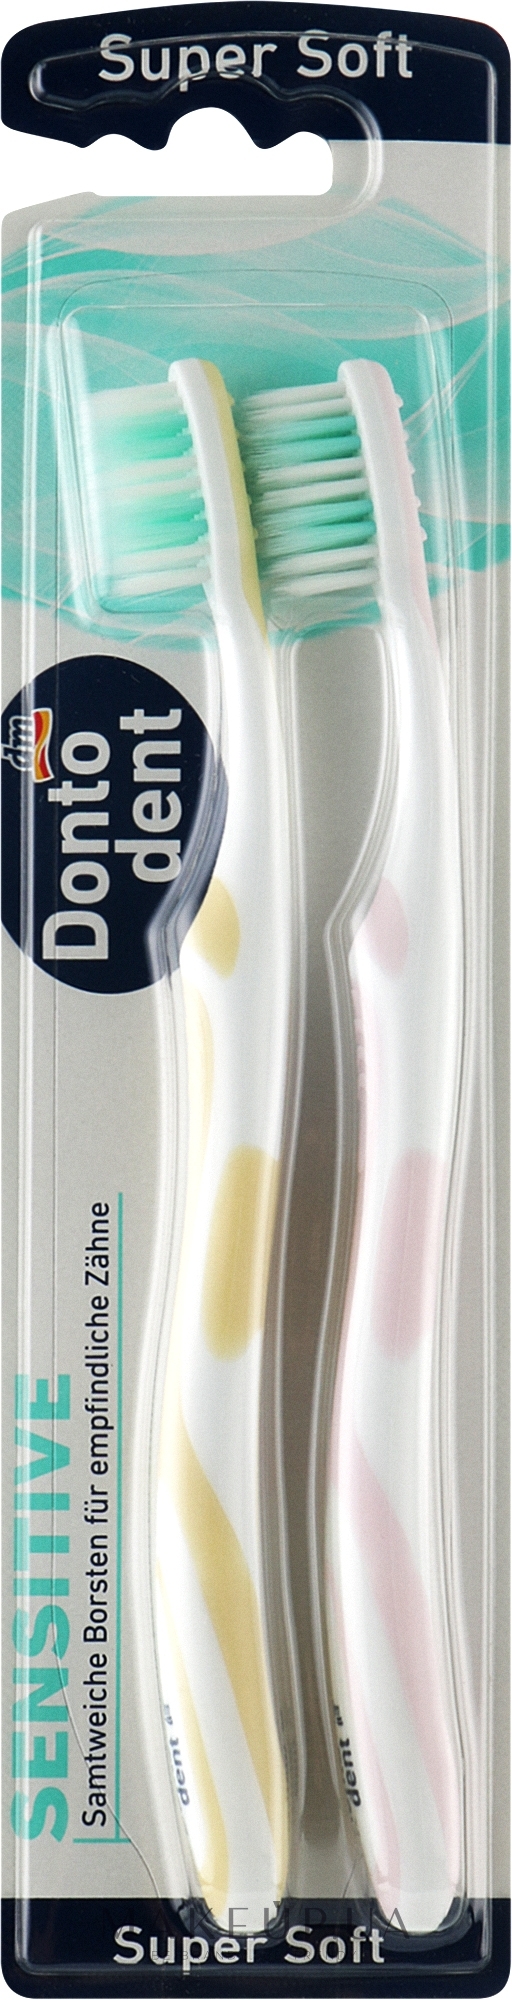 Зубные щетки ультрамягкие, желтая + розовая, 2 шт - Dontodent Sensitive Super Soft — фото 2шт